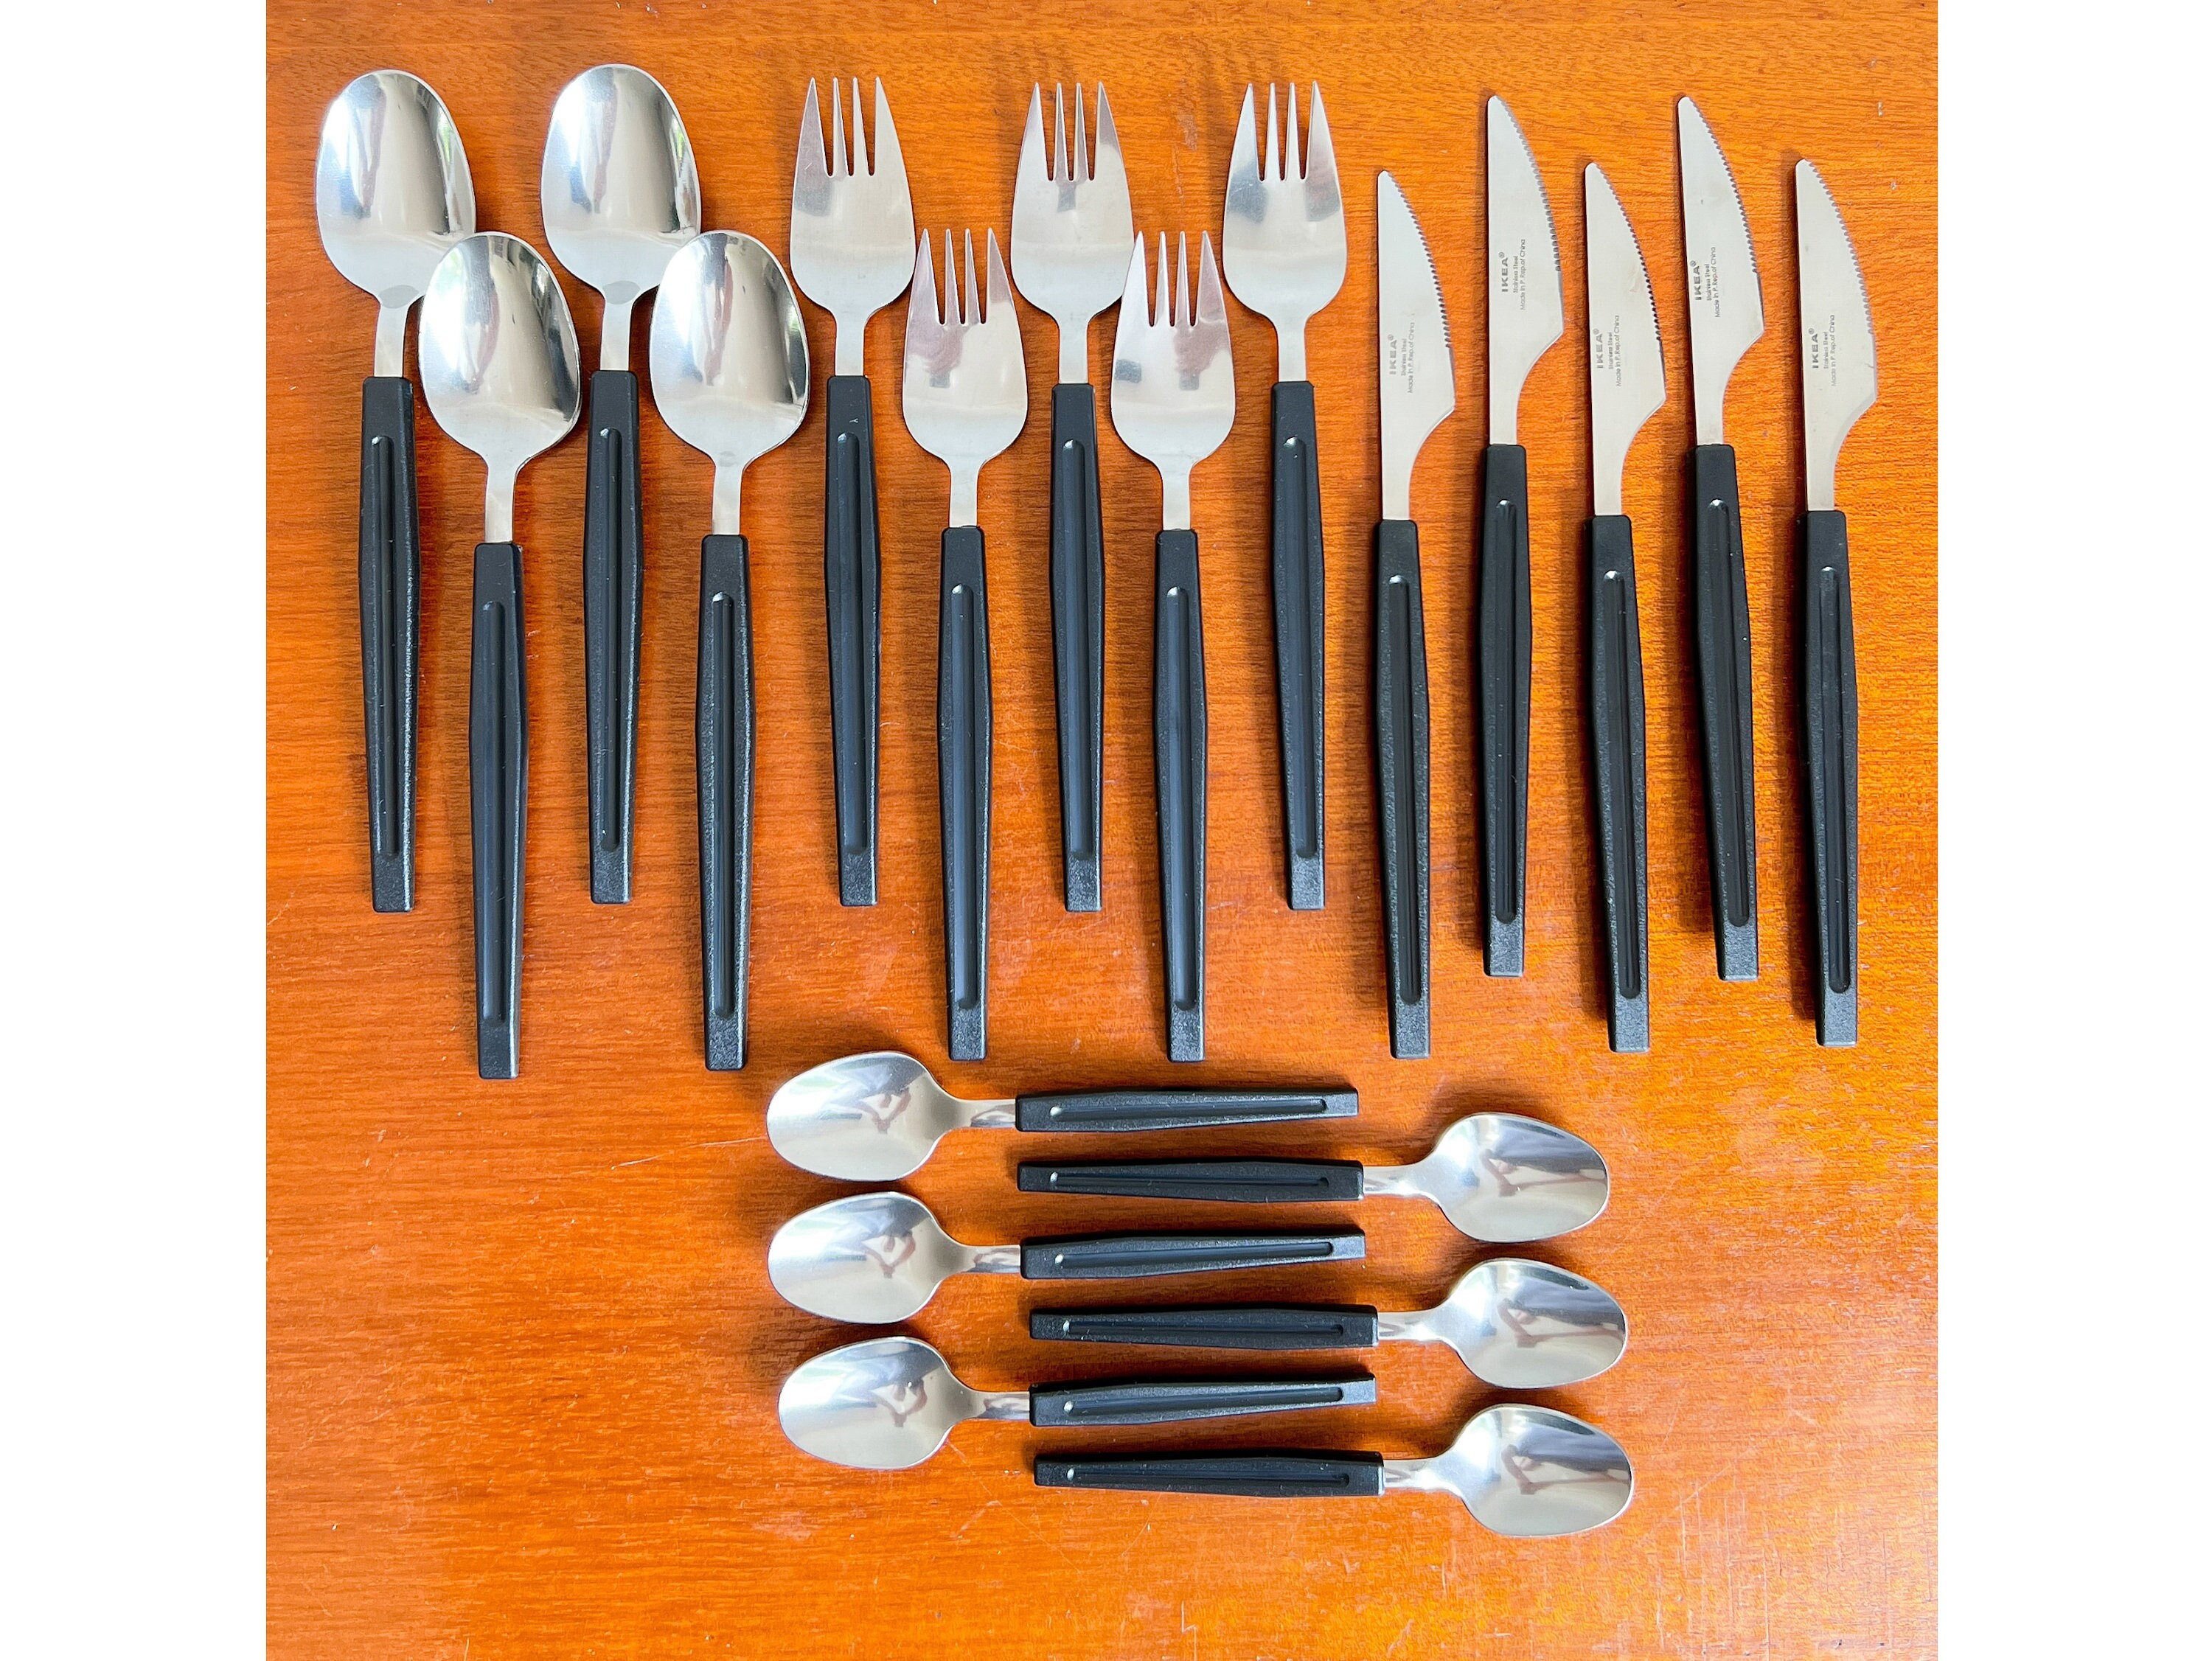 Flatware & Cutlery - Cutlery Sets - IKEA